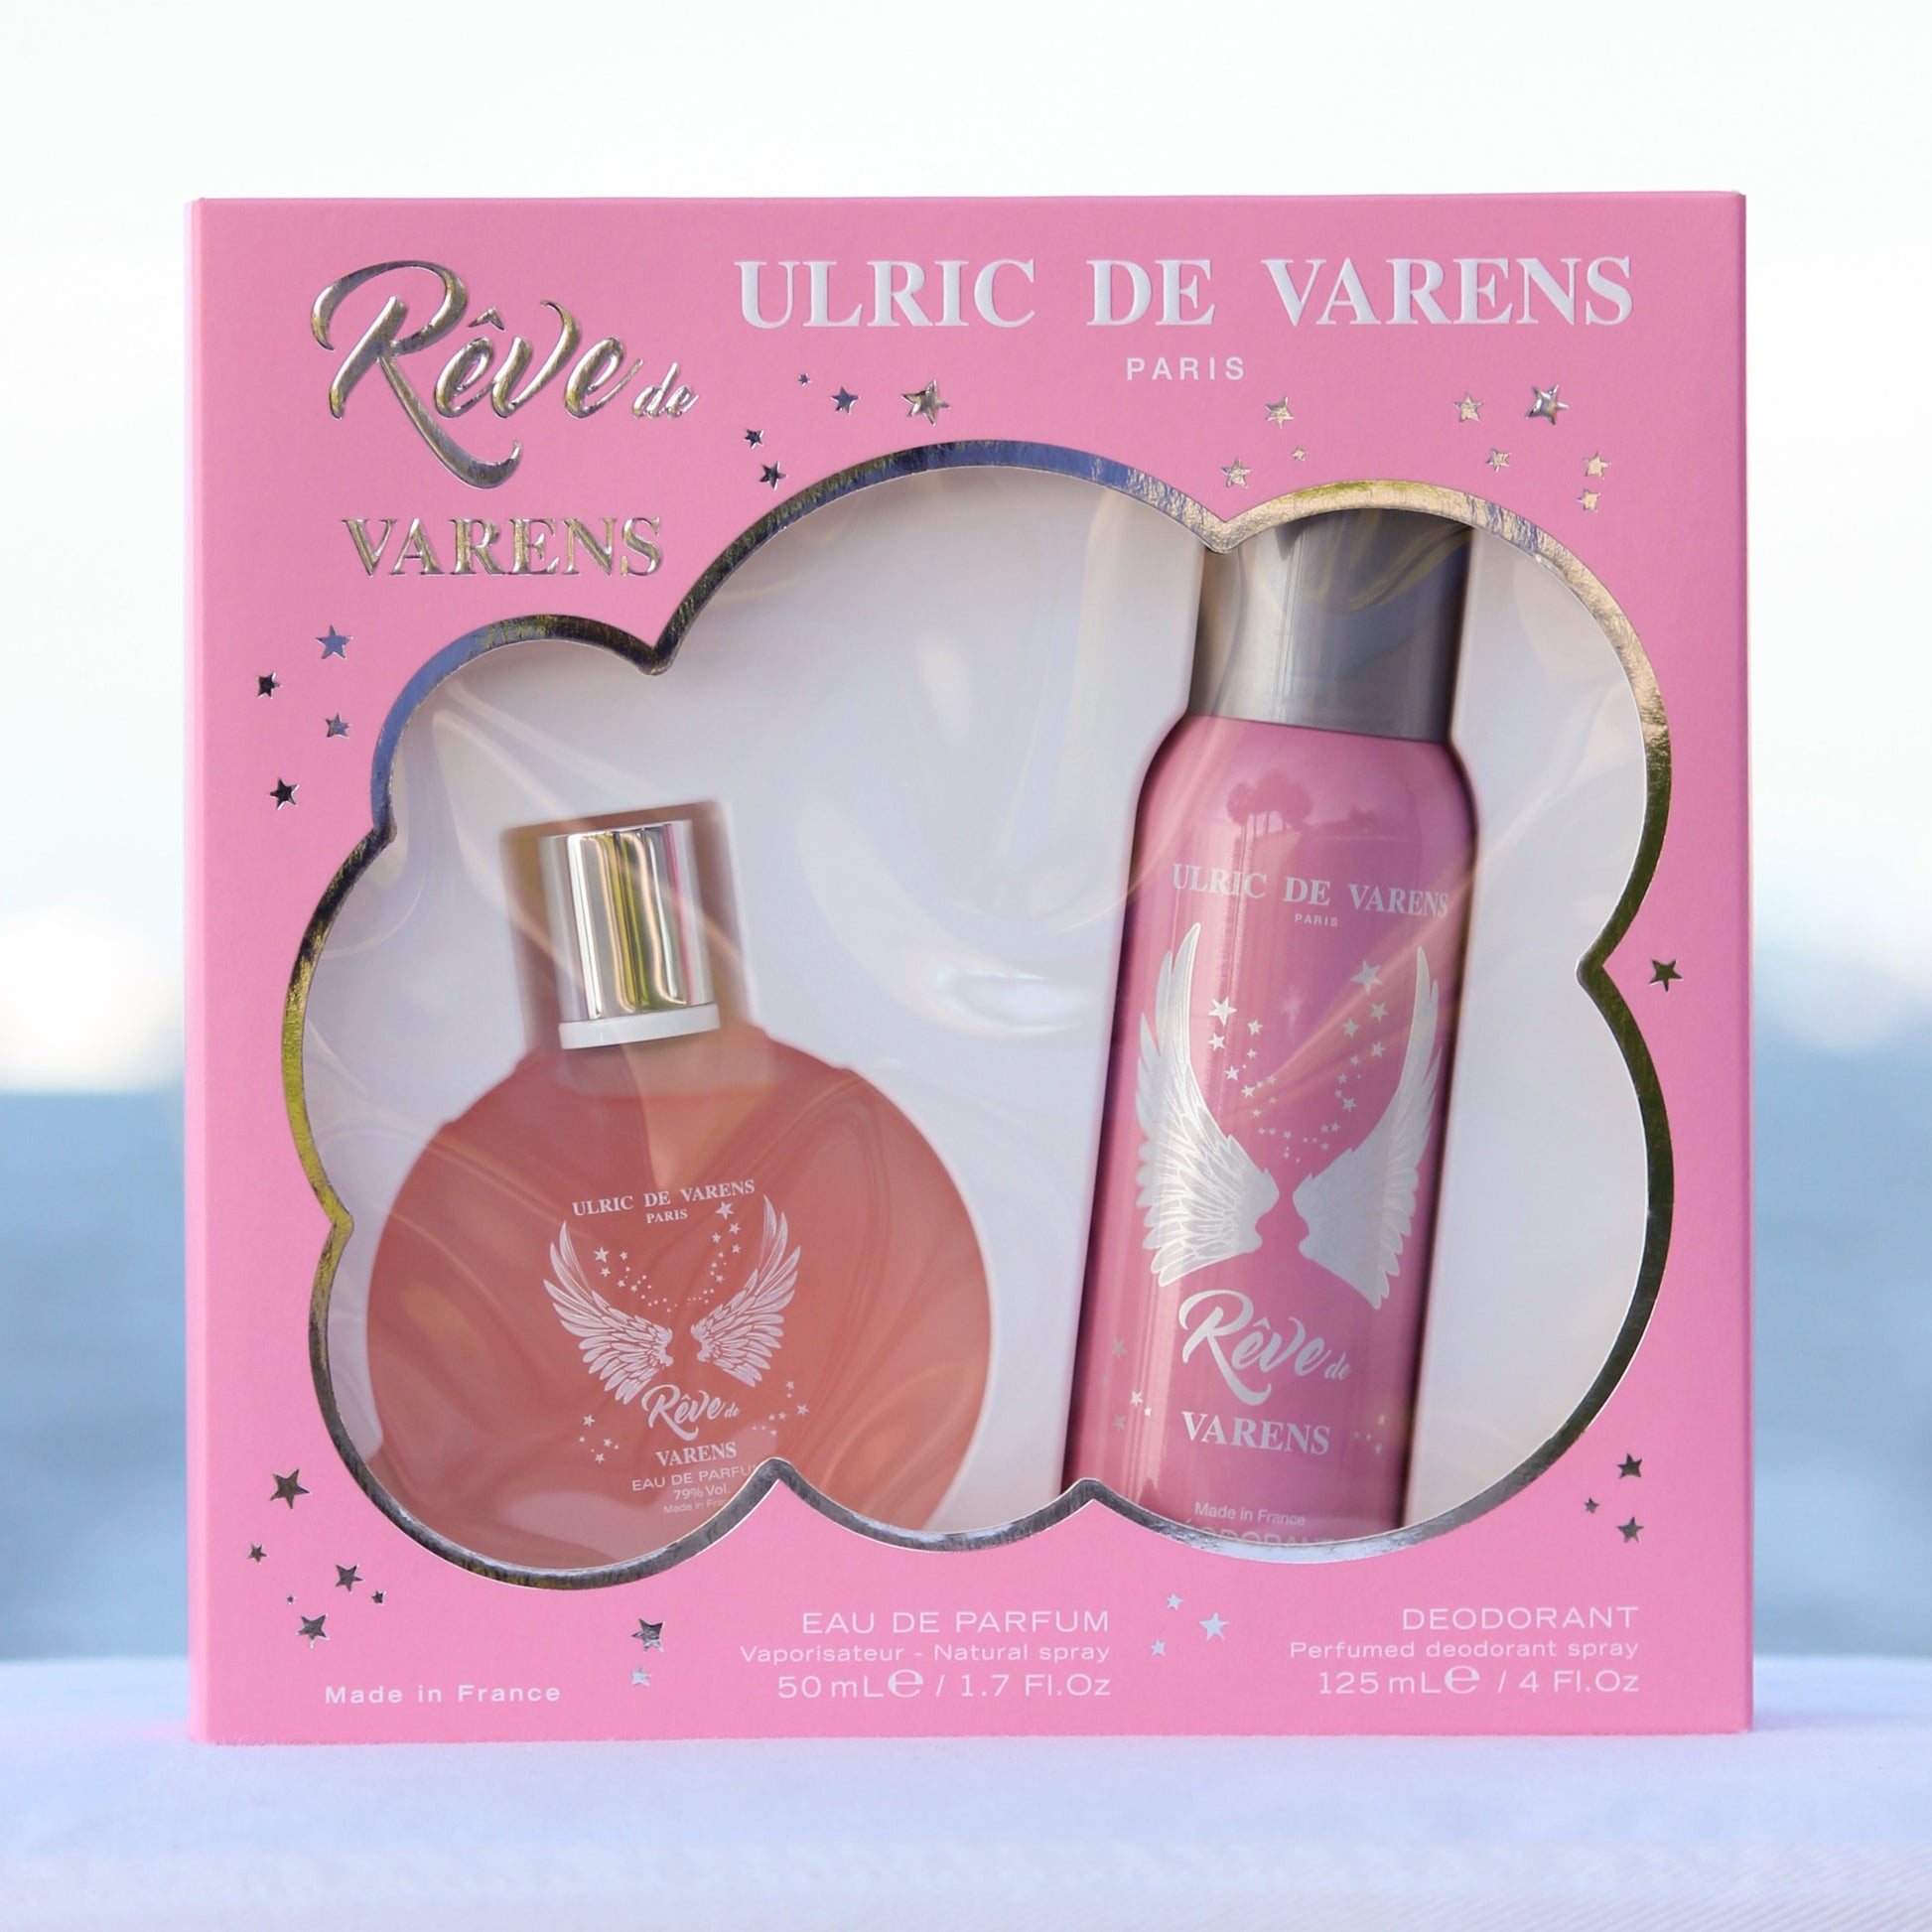 Ulric De Varens Reve De Varens Gift Set women perfume 1.7 EDP and deodorant 4 oz in front of beach